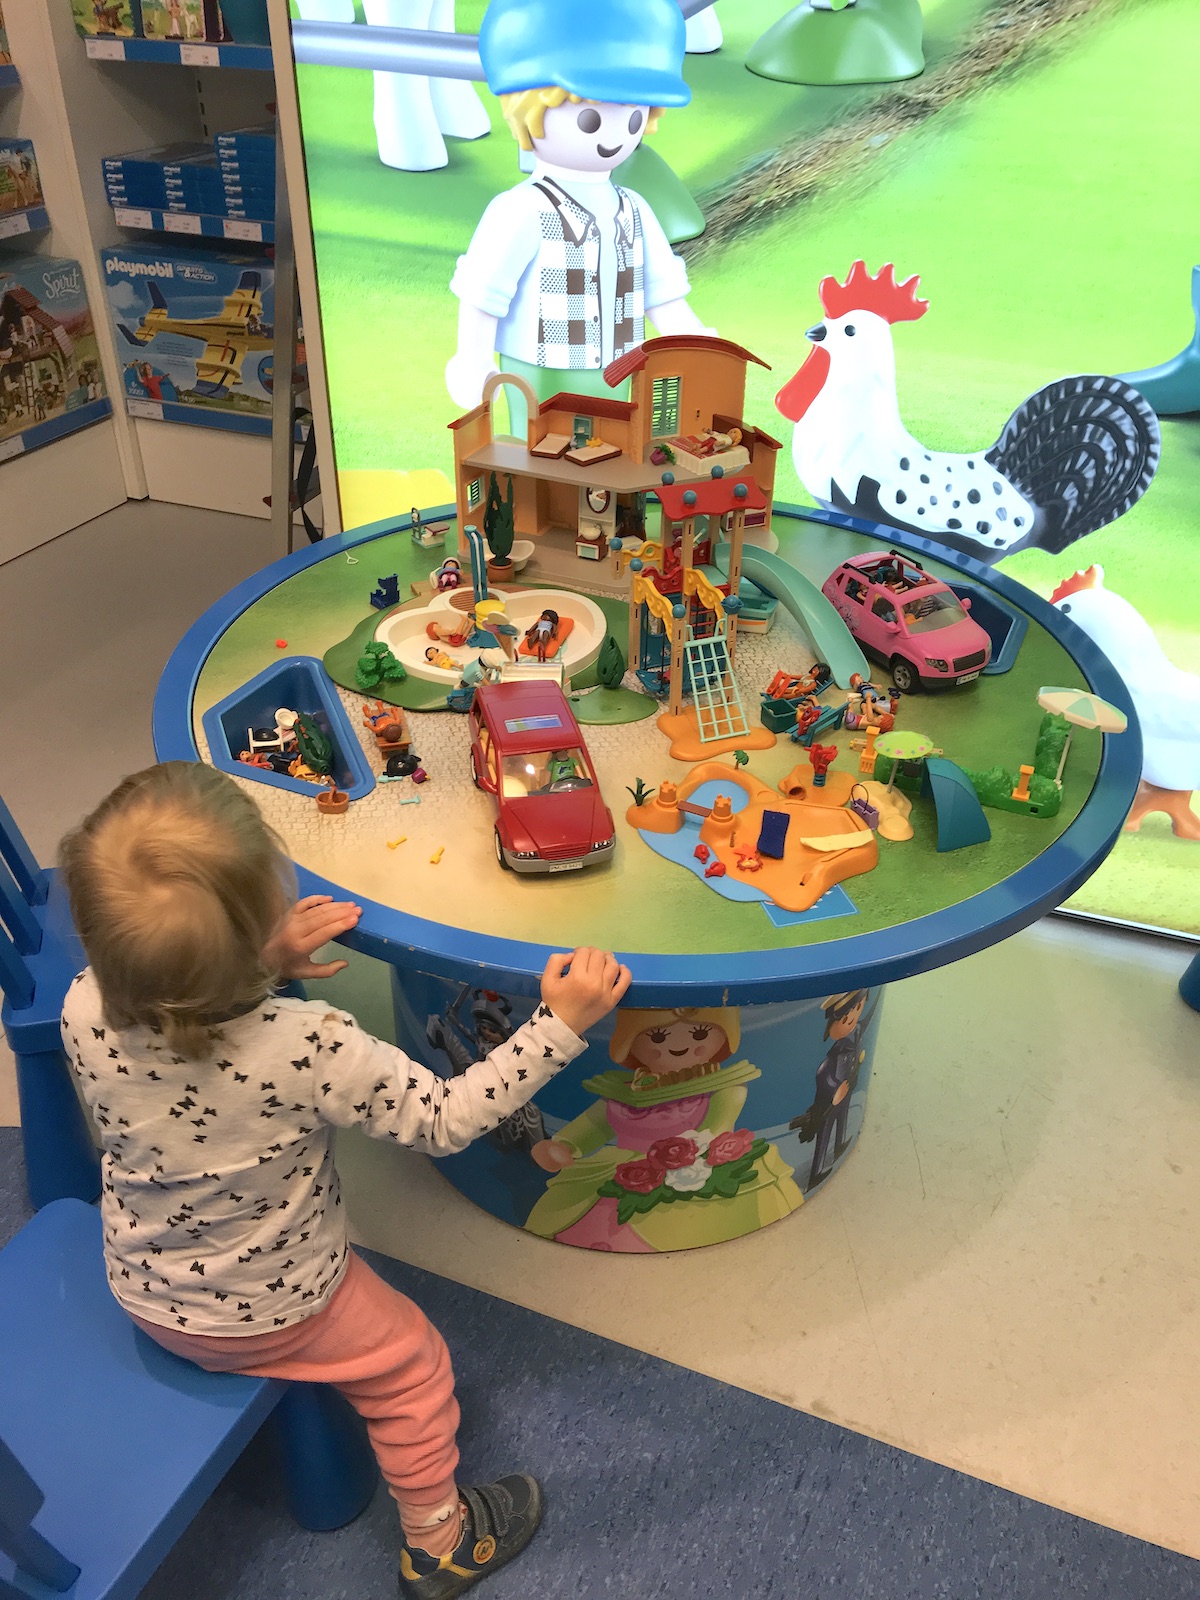 Meine Tochter spielt ausgiebig mit den ausgestellten Playmobil-Figuren. - Mehr Infos auf mamaskind.de